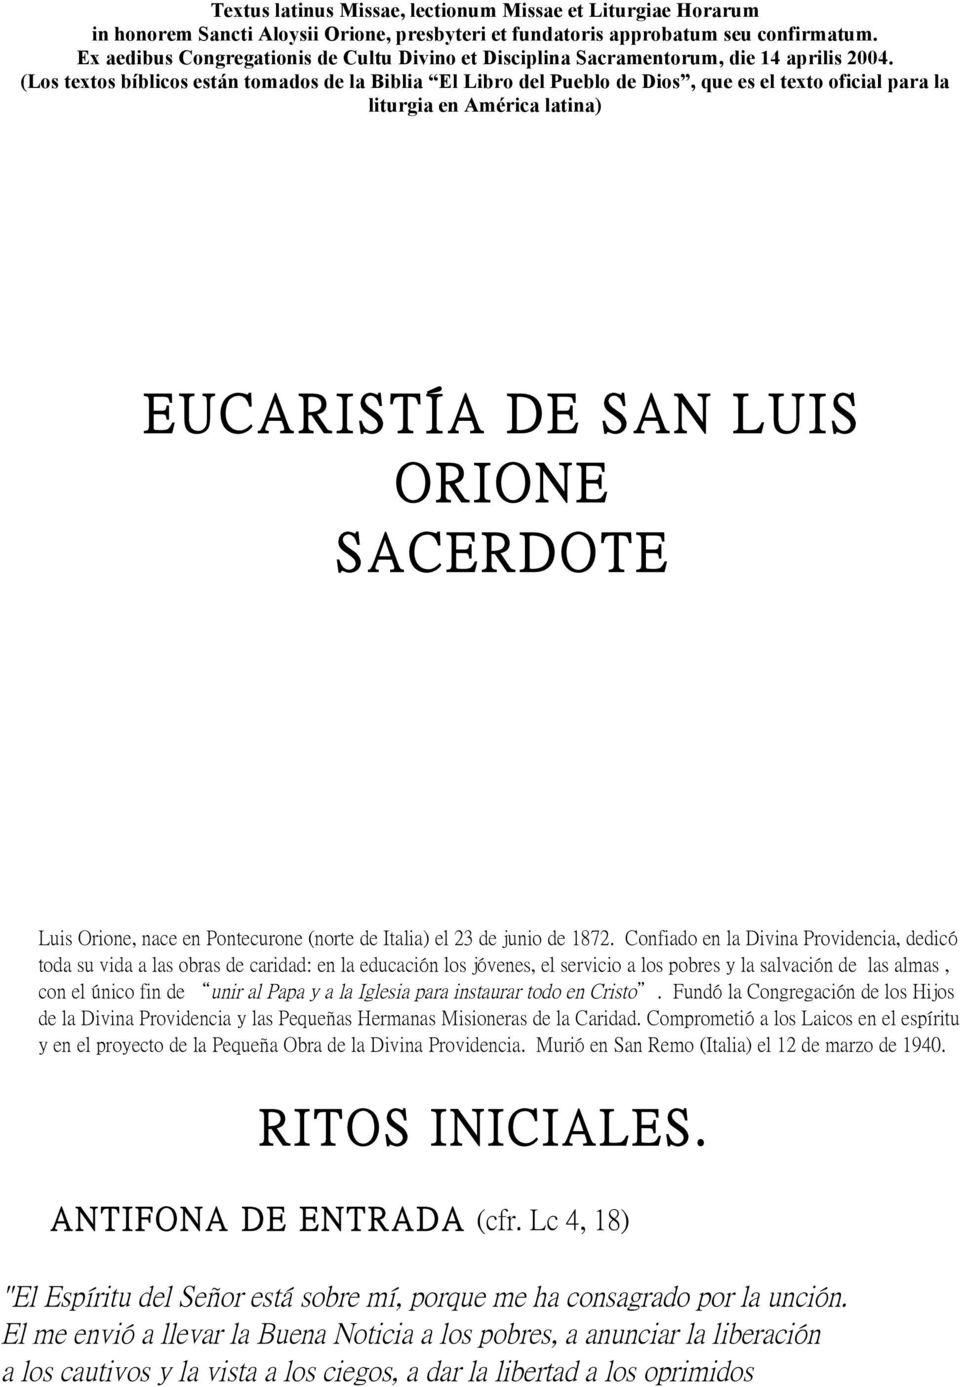 Ex aedibus Congregationis de Cultu Divino et Disciplina Sacramentorum, die 14 aprilis 2004.